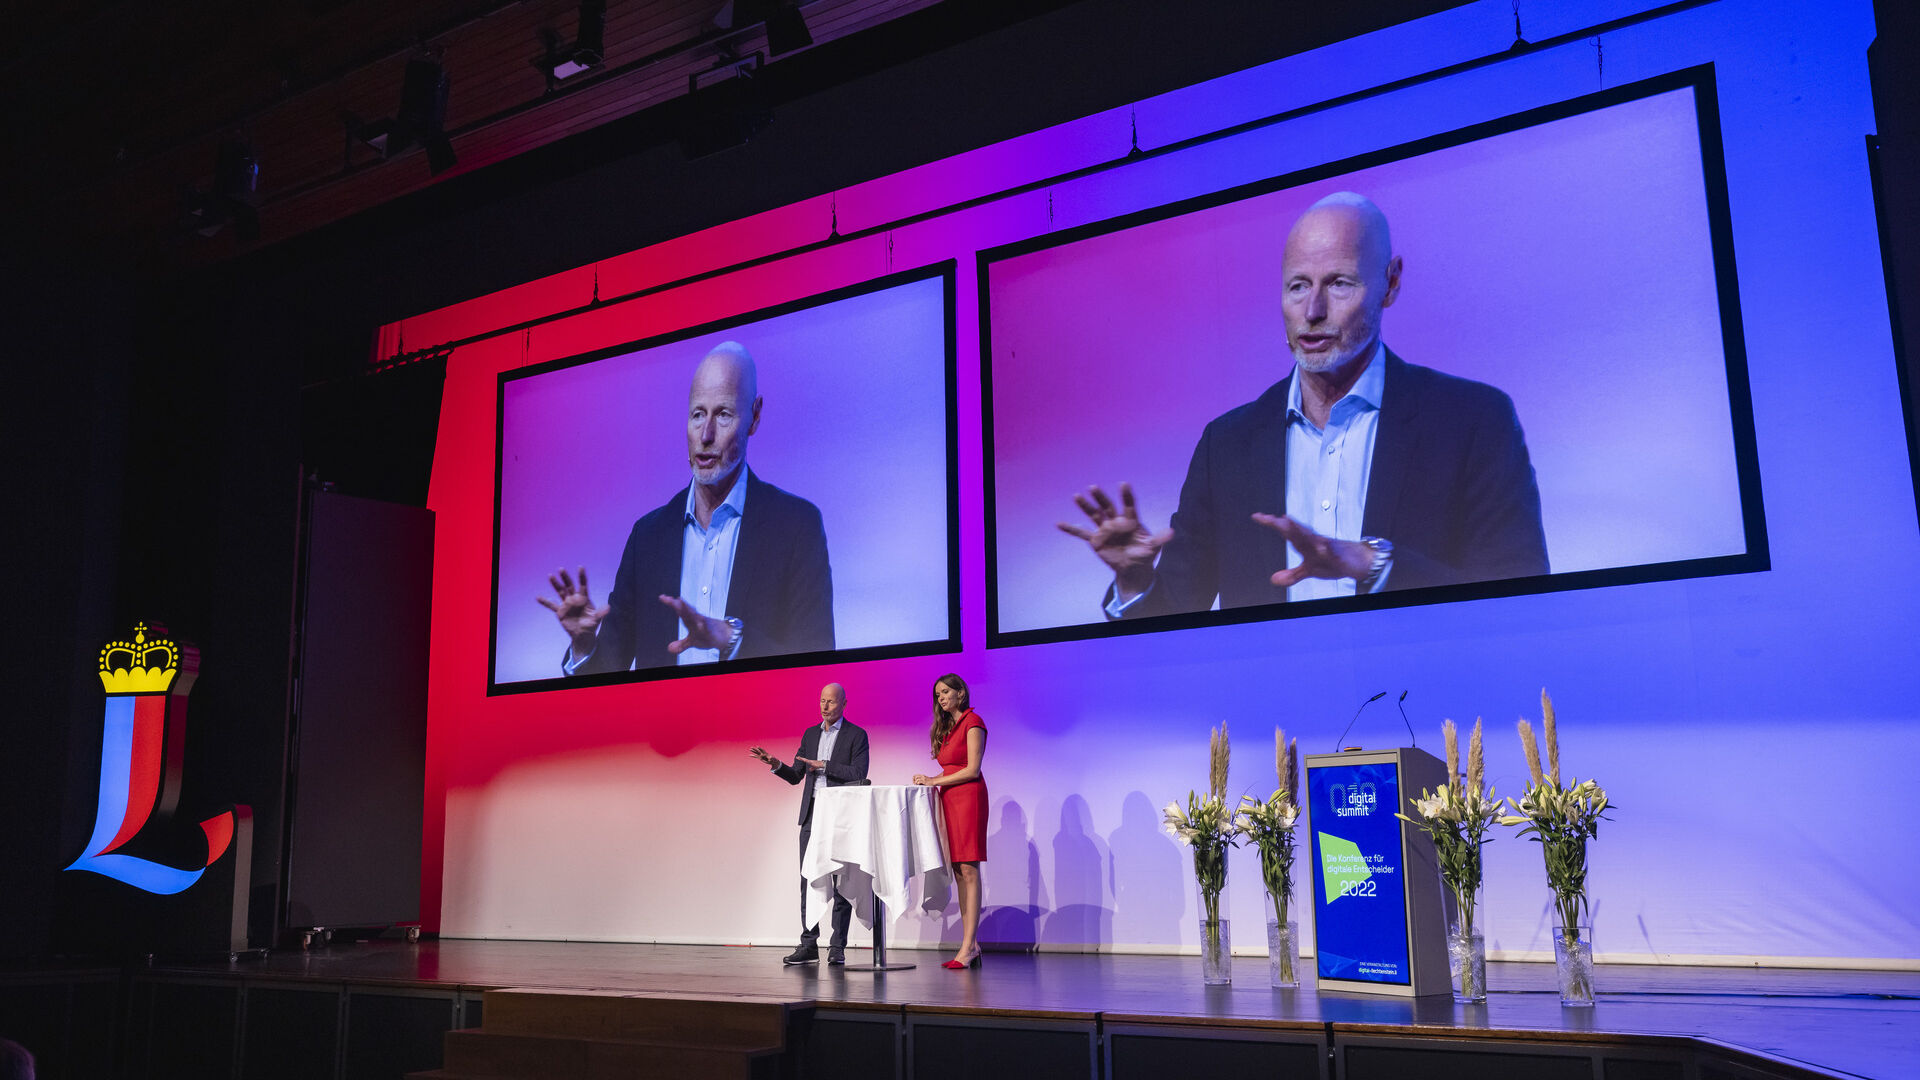 2022-udgaven af ​​begivenheden "Digital Summit" i Vaduz